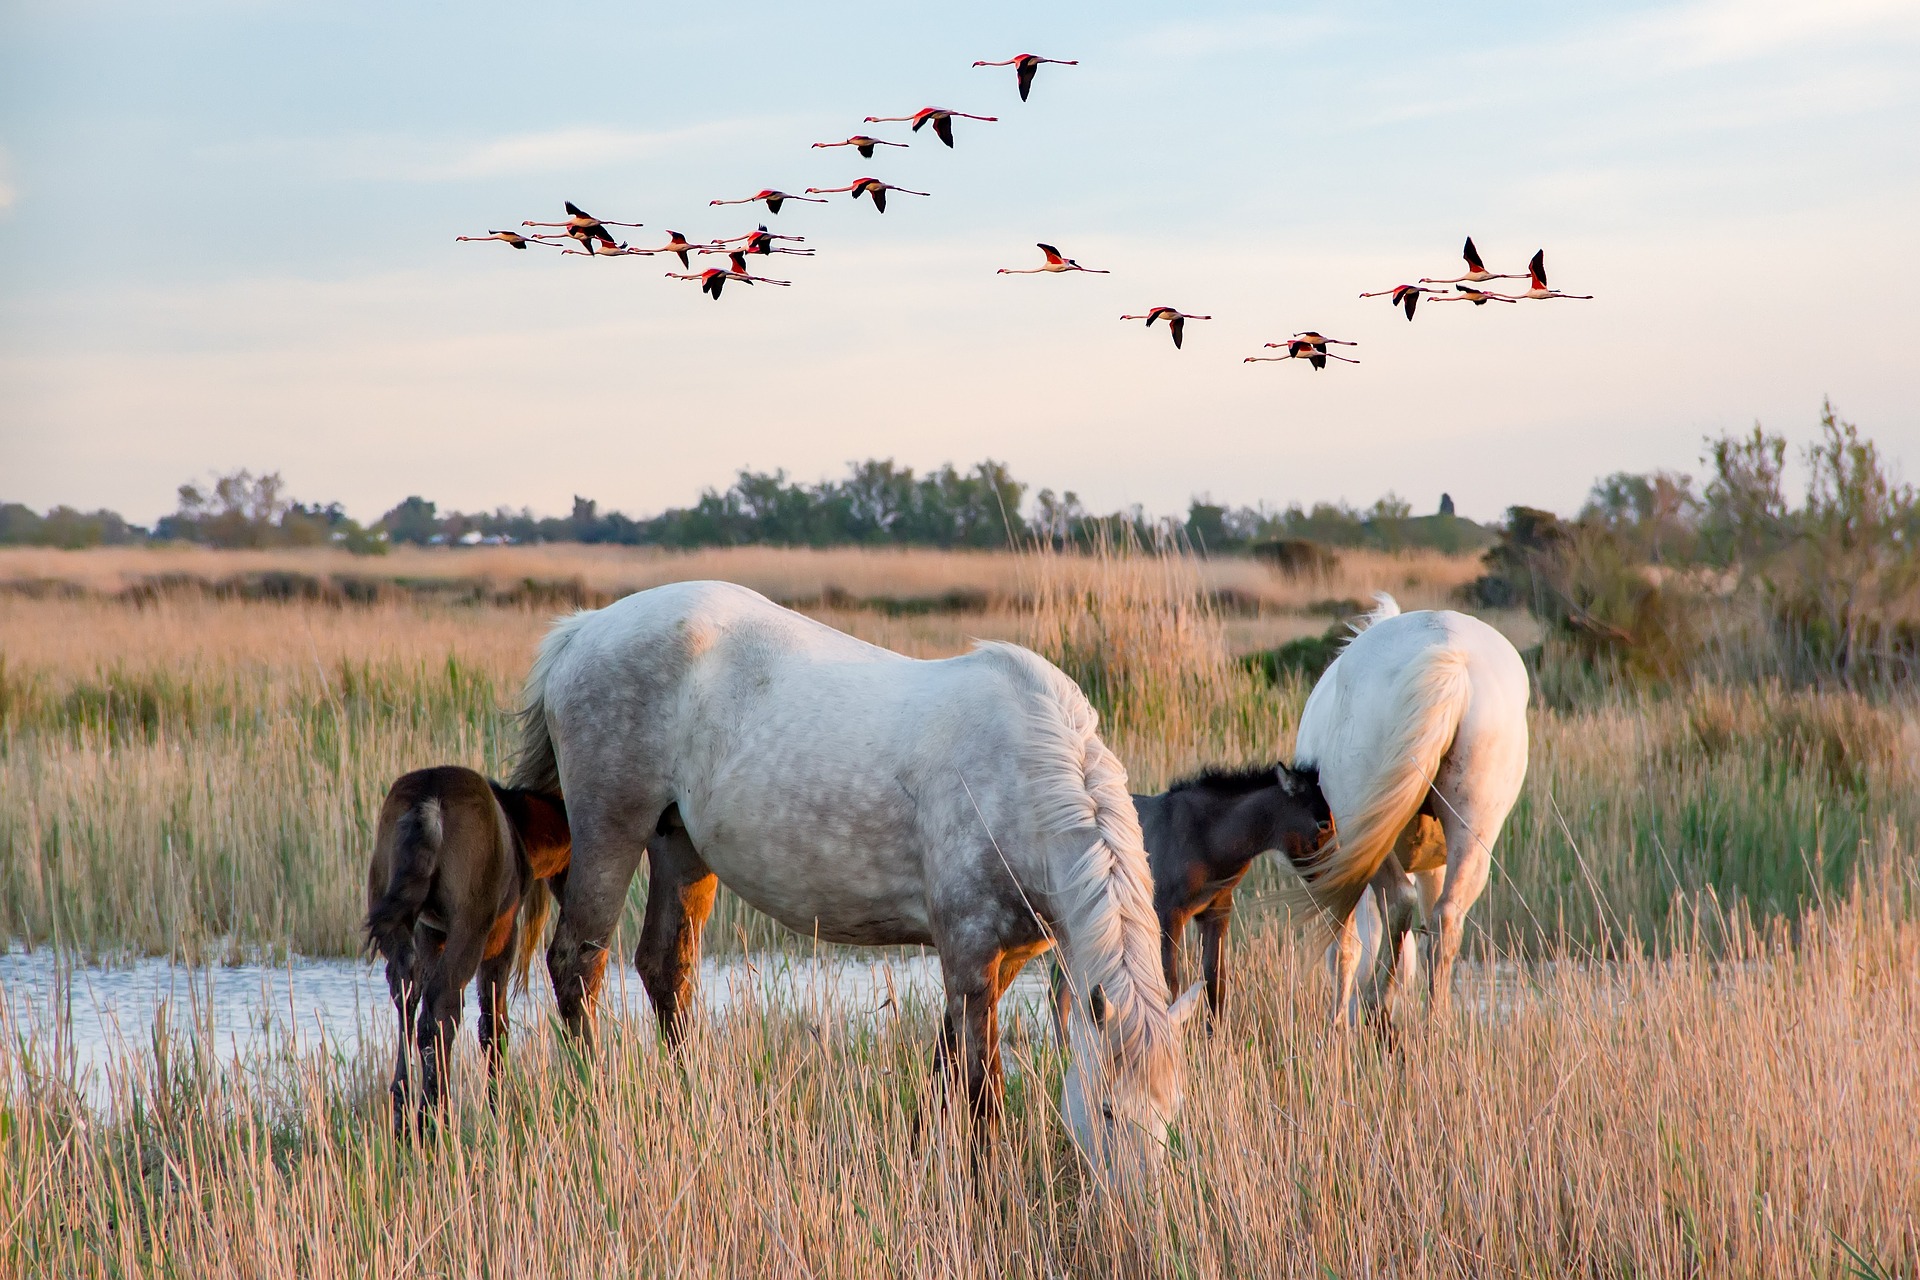 Witte paarden met hun veulens en overvliegende vogels in het riet langs het water van de Camargue (een moerassig natuurgebied aan de middellandse zee).